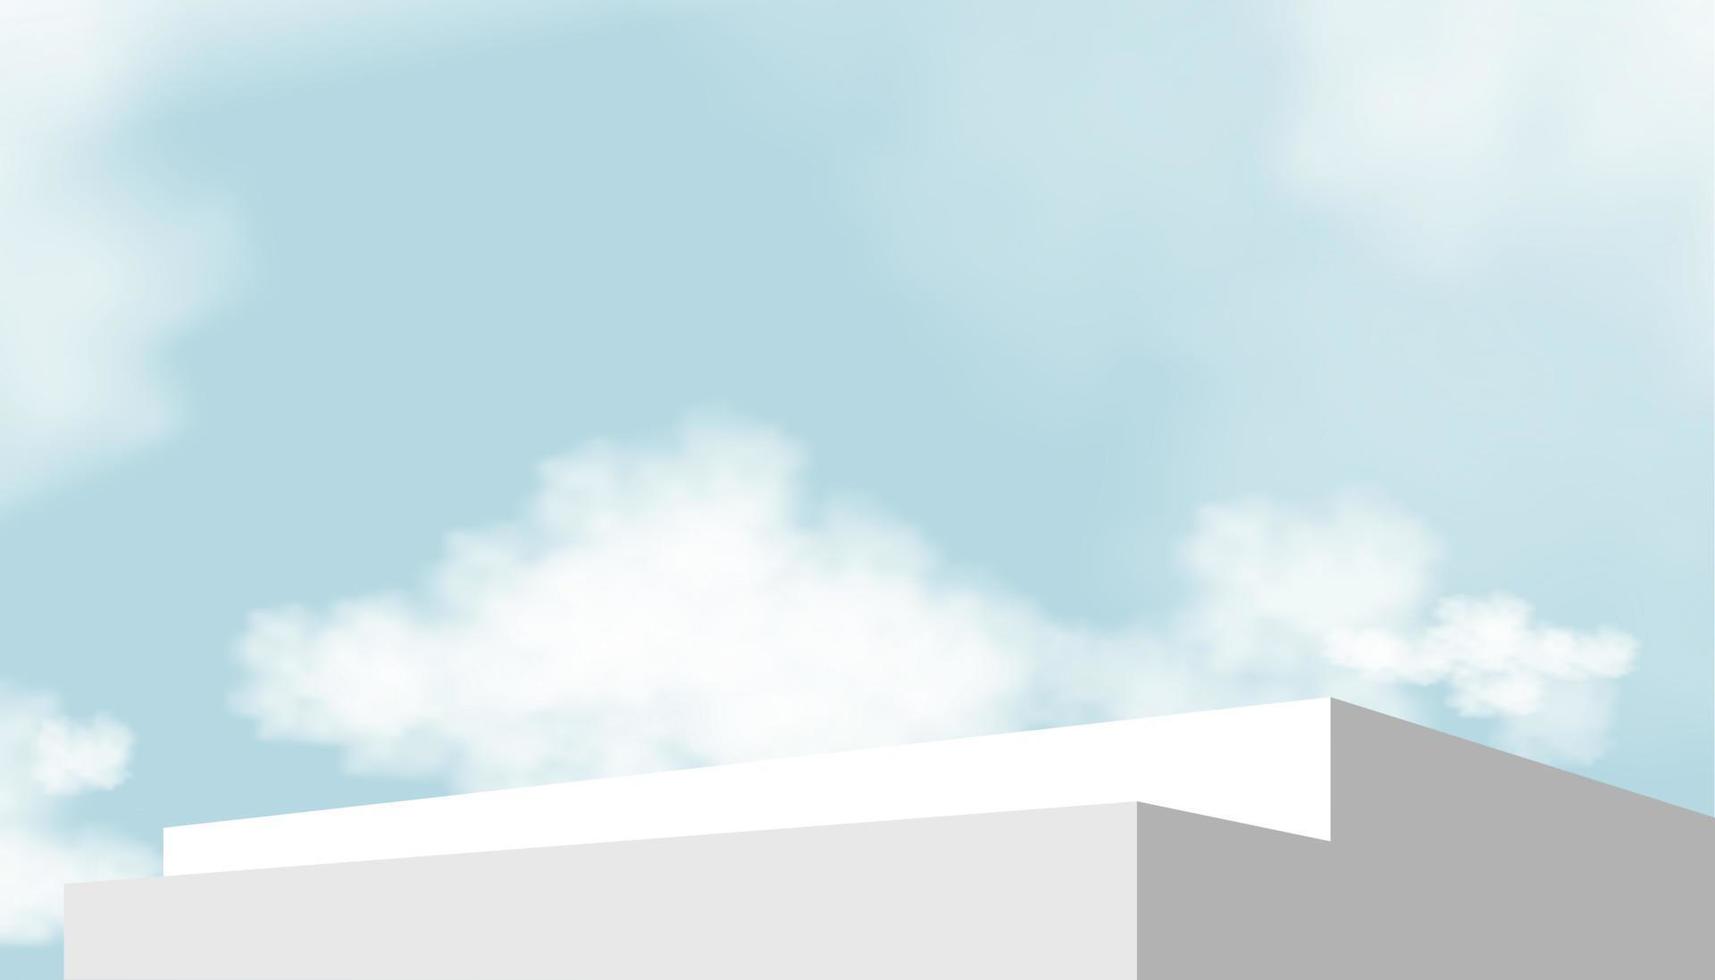 Paso de podio de pantalla 3d con plataforma geométrica sobre fondo de cielo azul, banner de horizonte vectorial con escaparate de escenario, maqueta de escalera en nube de verano, escena de diseño con soporte para primavera, cosmética de verano vector